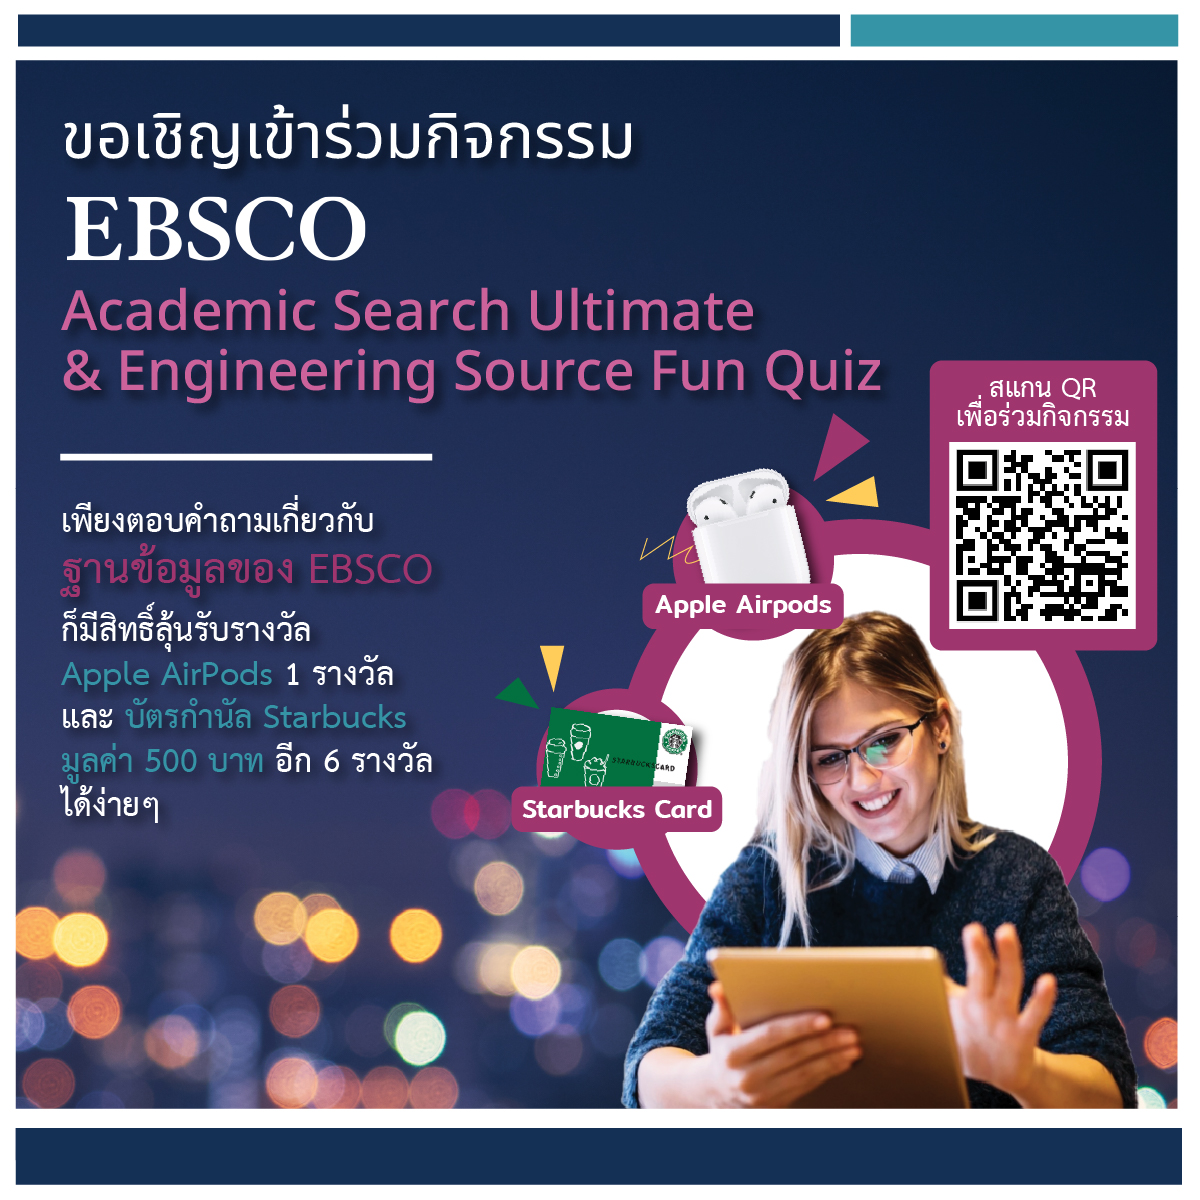 กิจกรรม EBSCO Academic Search Ultimate & Engineering Source Fun Quiz 